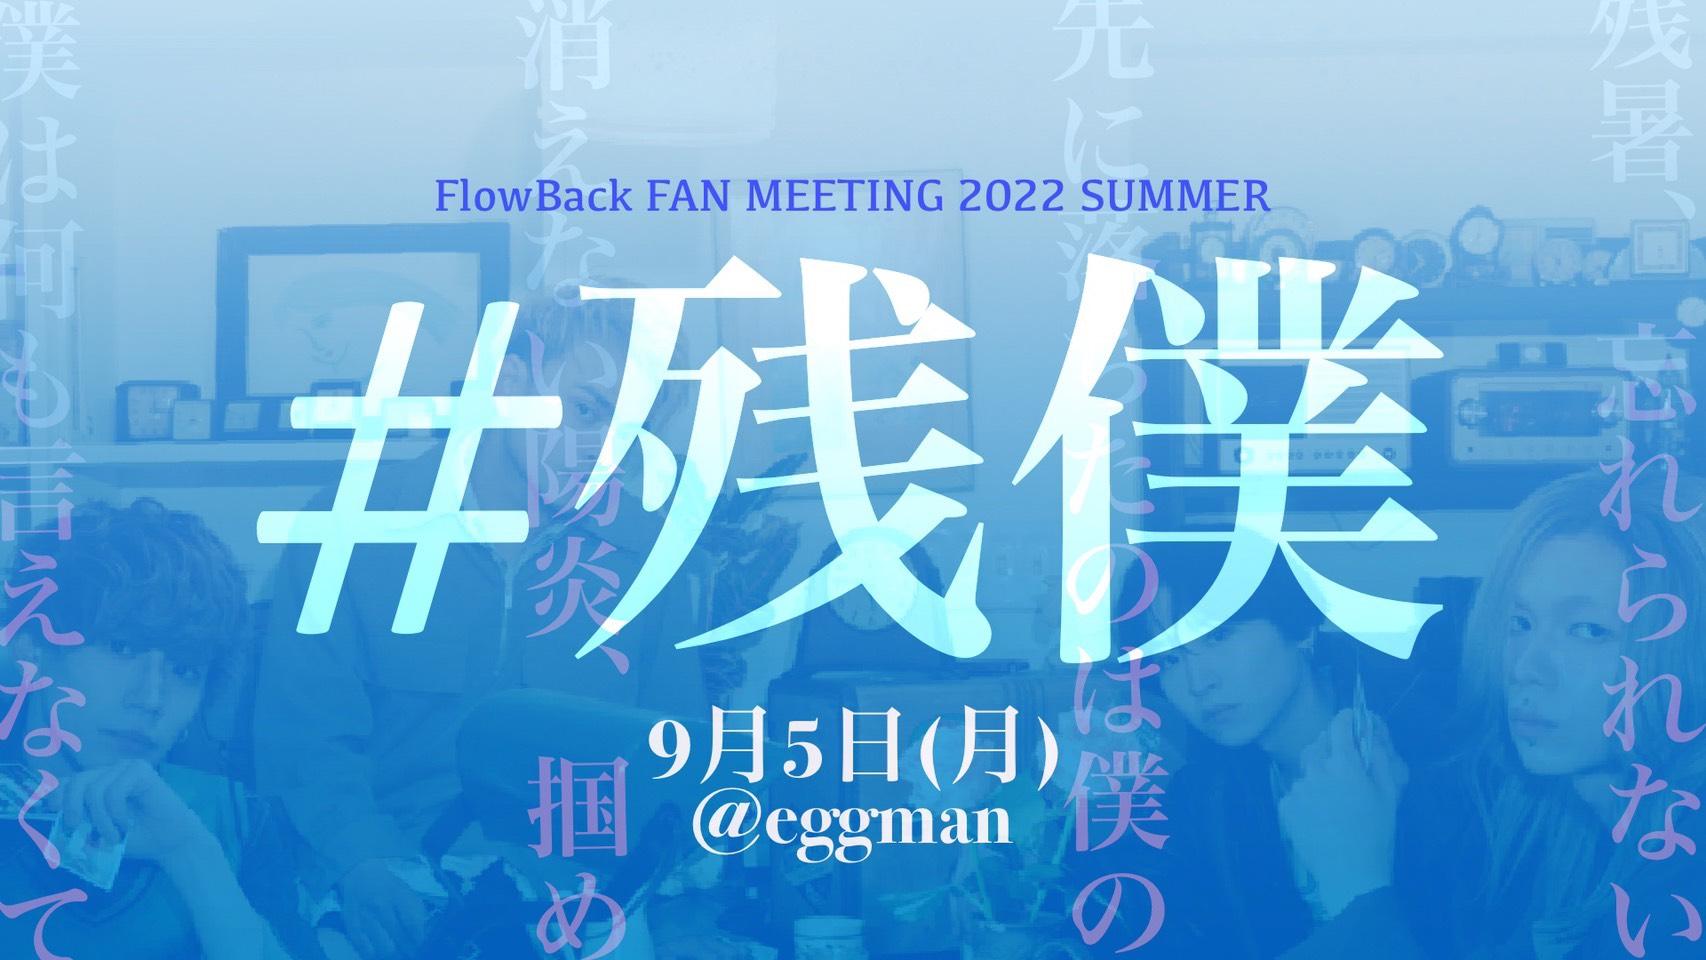 FlowBack FAN MEETING 2022 SUMMER #残僕